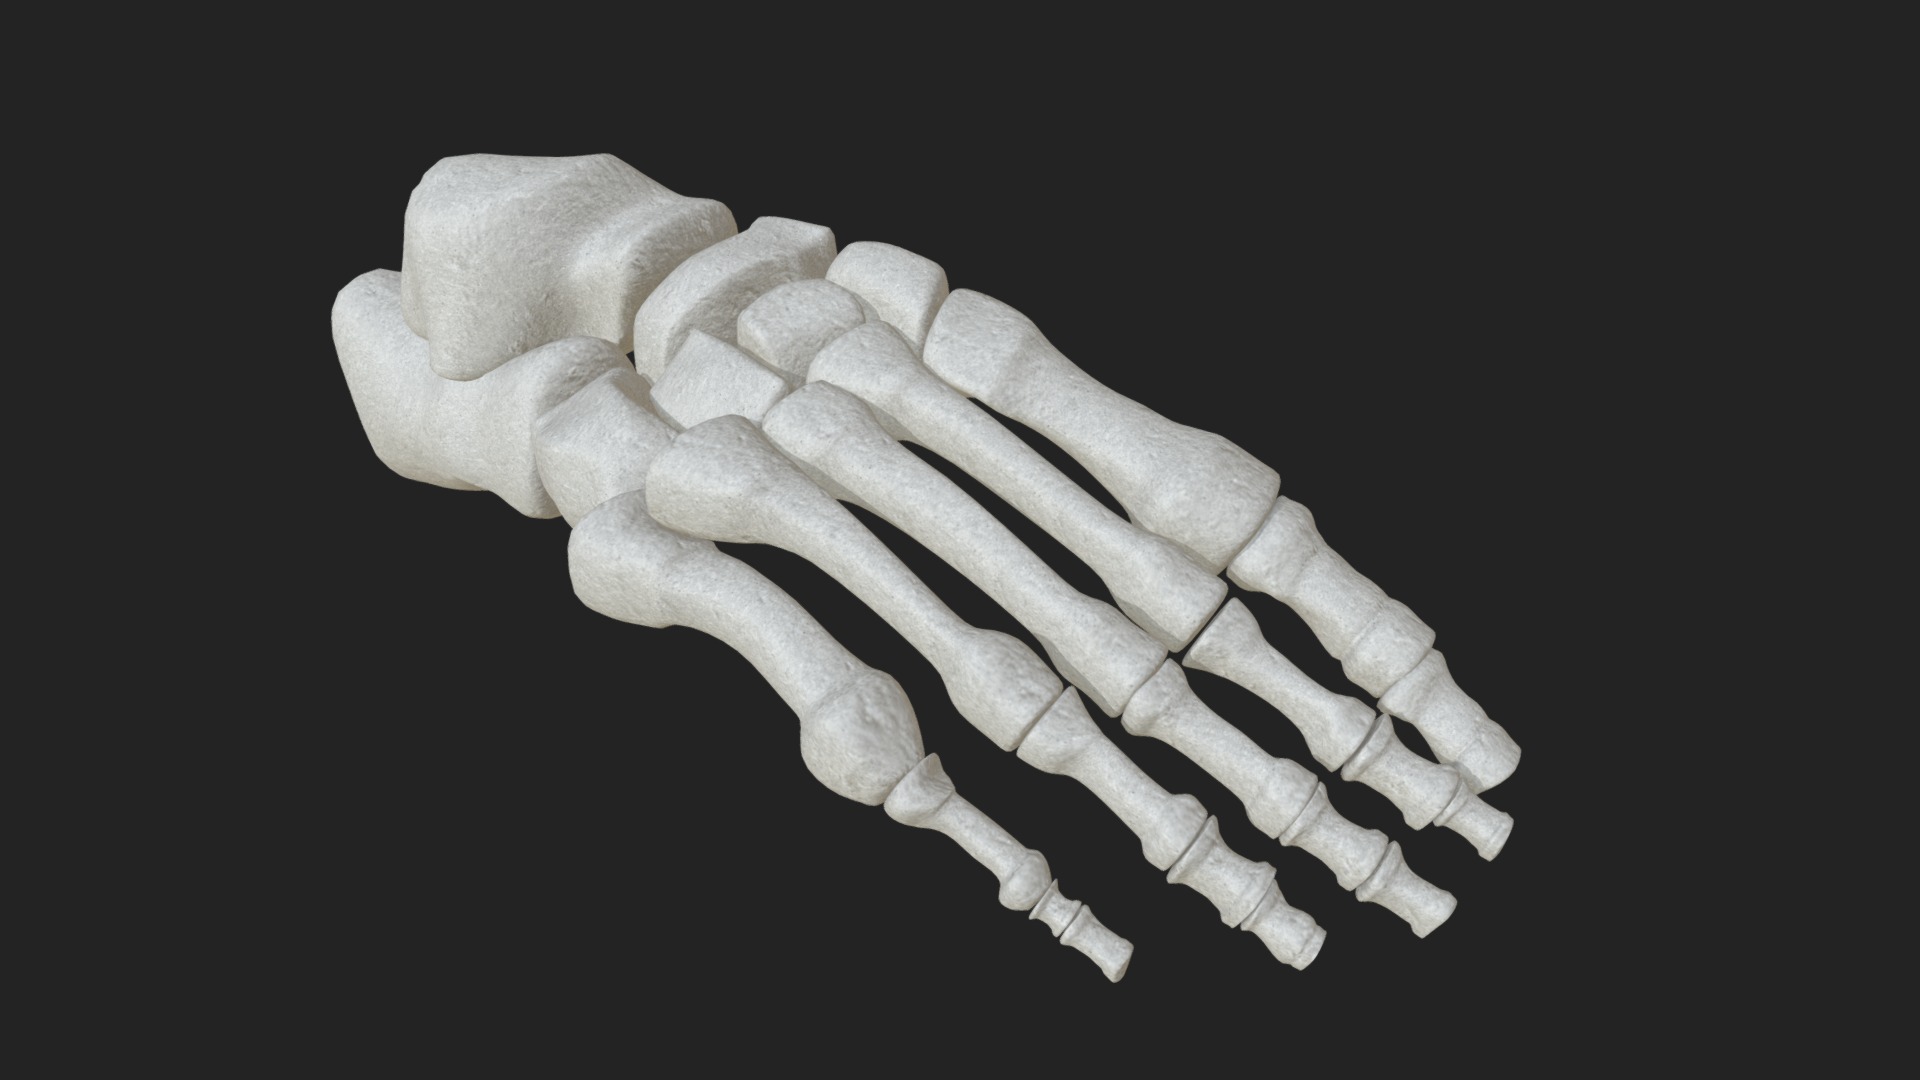 Anatomy - Human Foot Bones